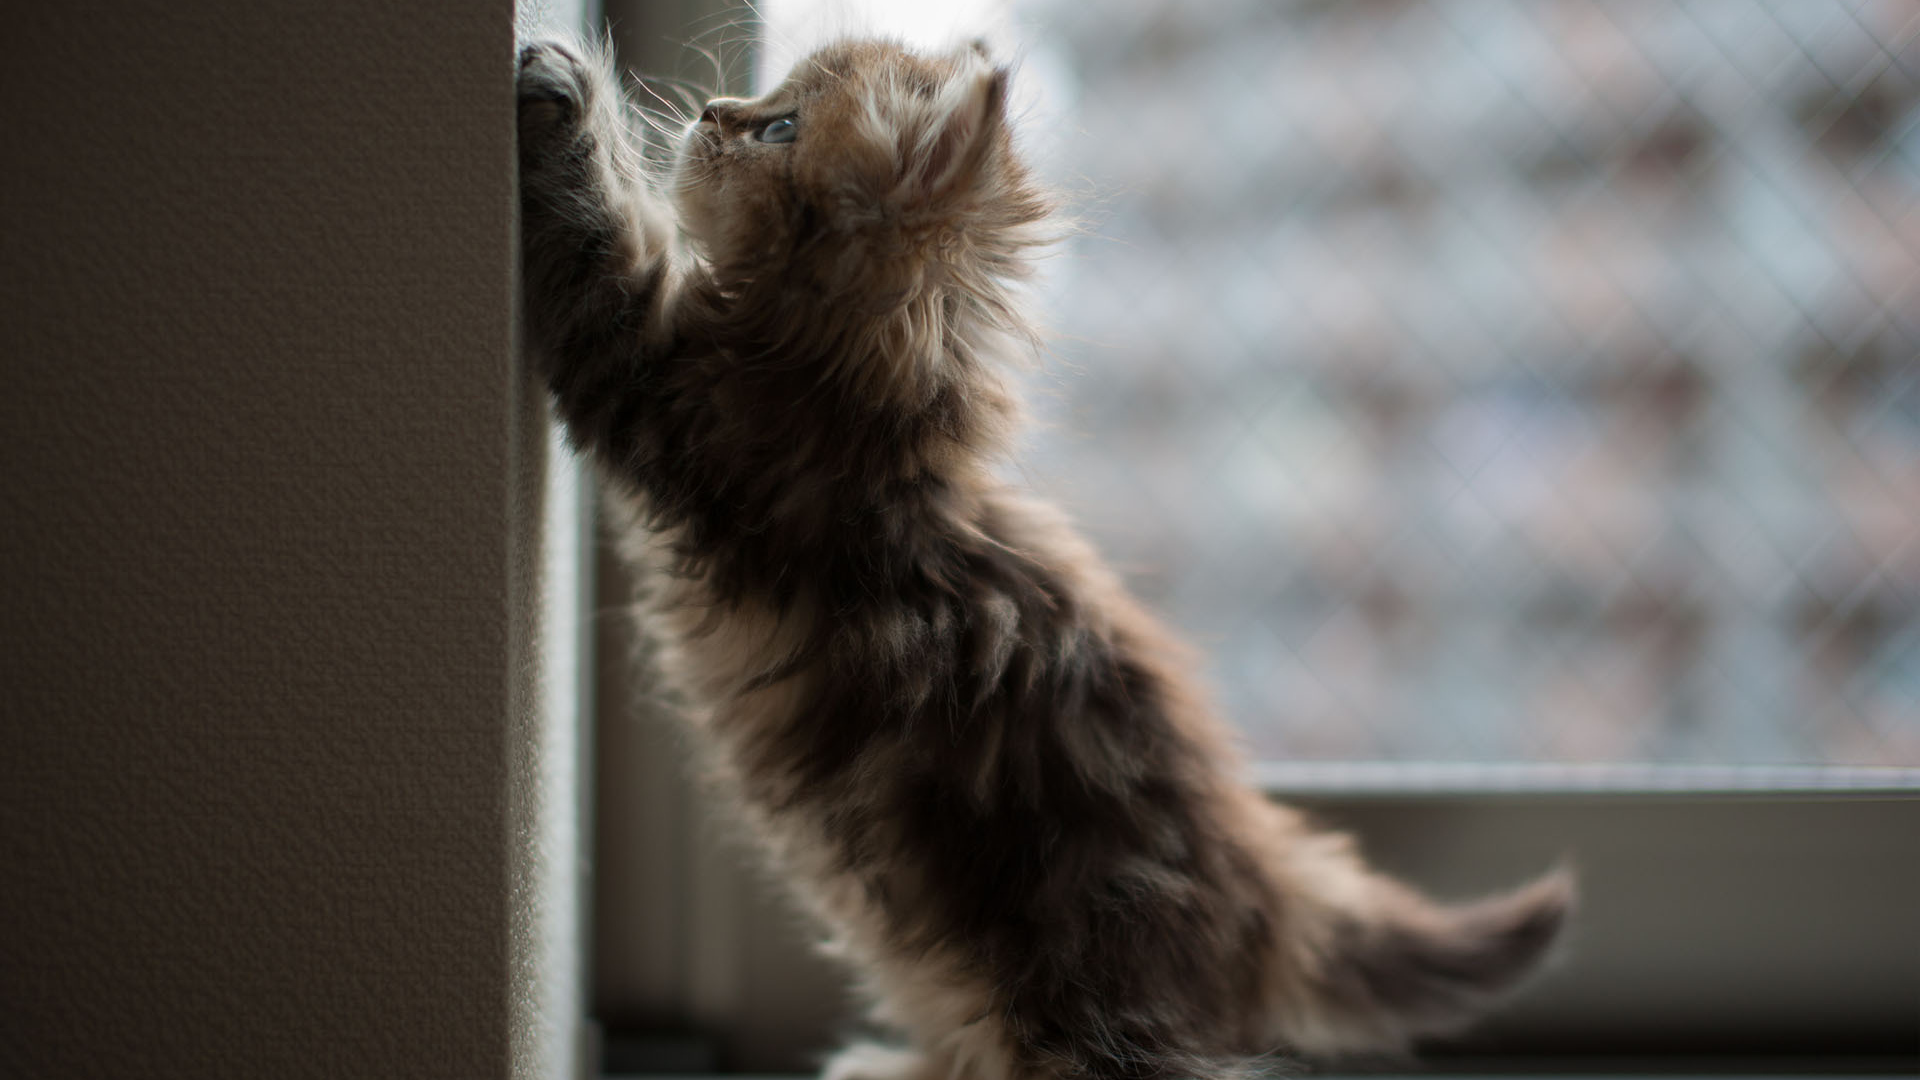 Котенок на окне